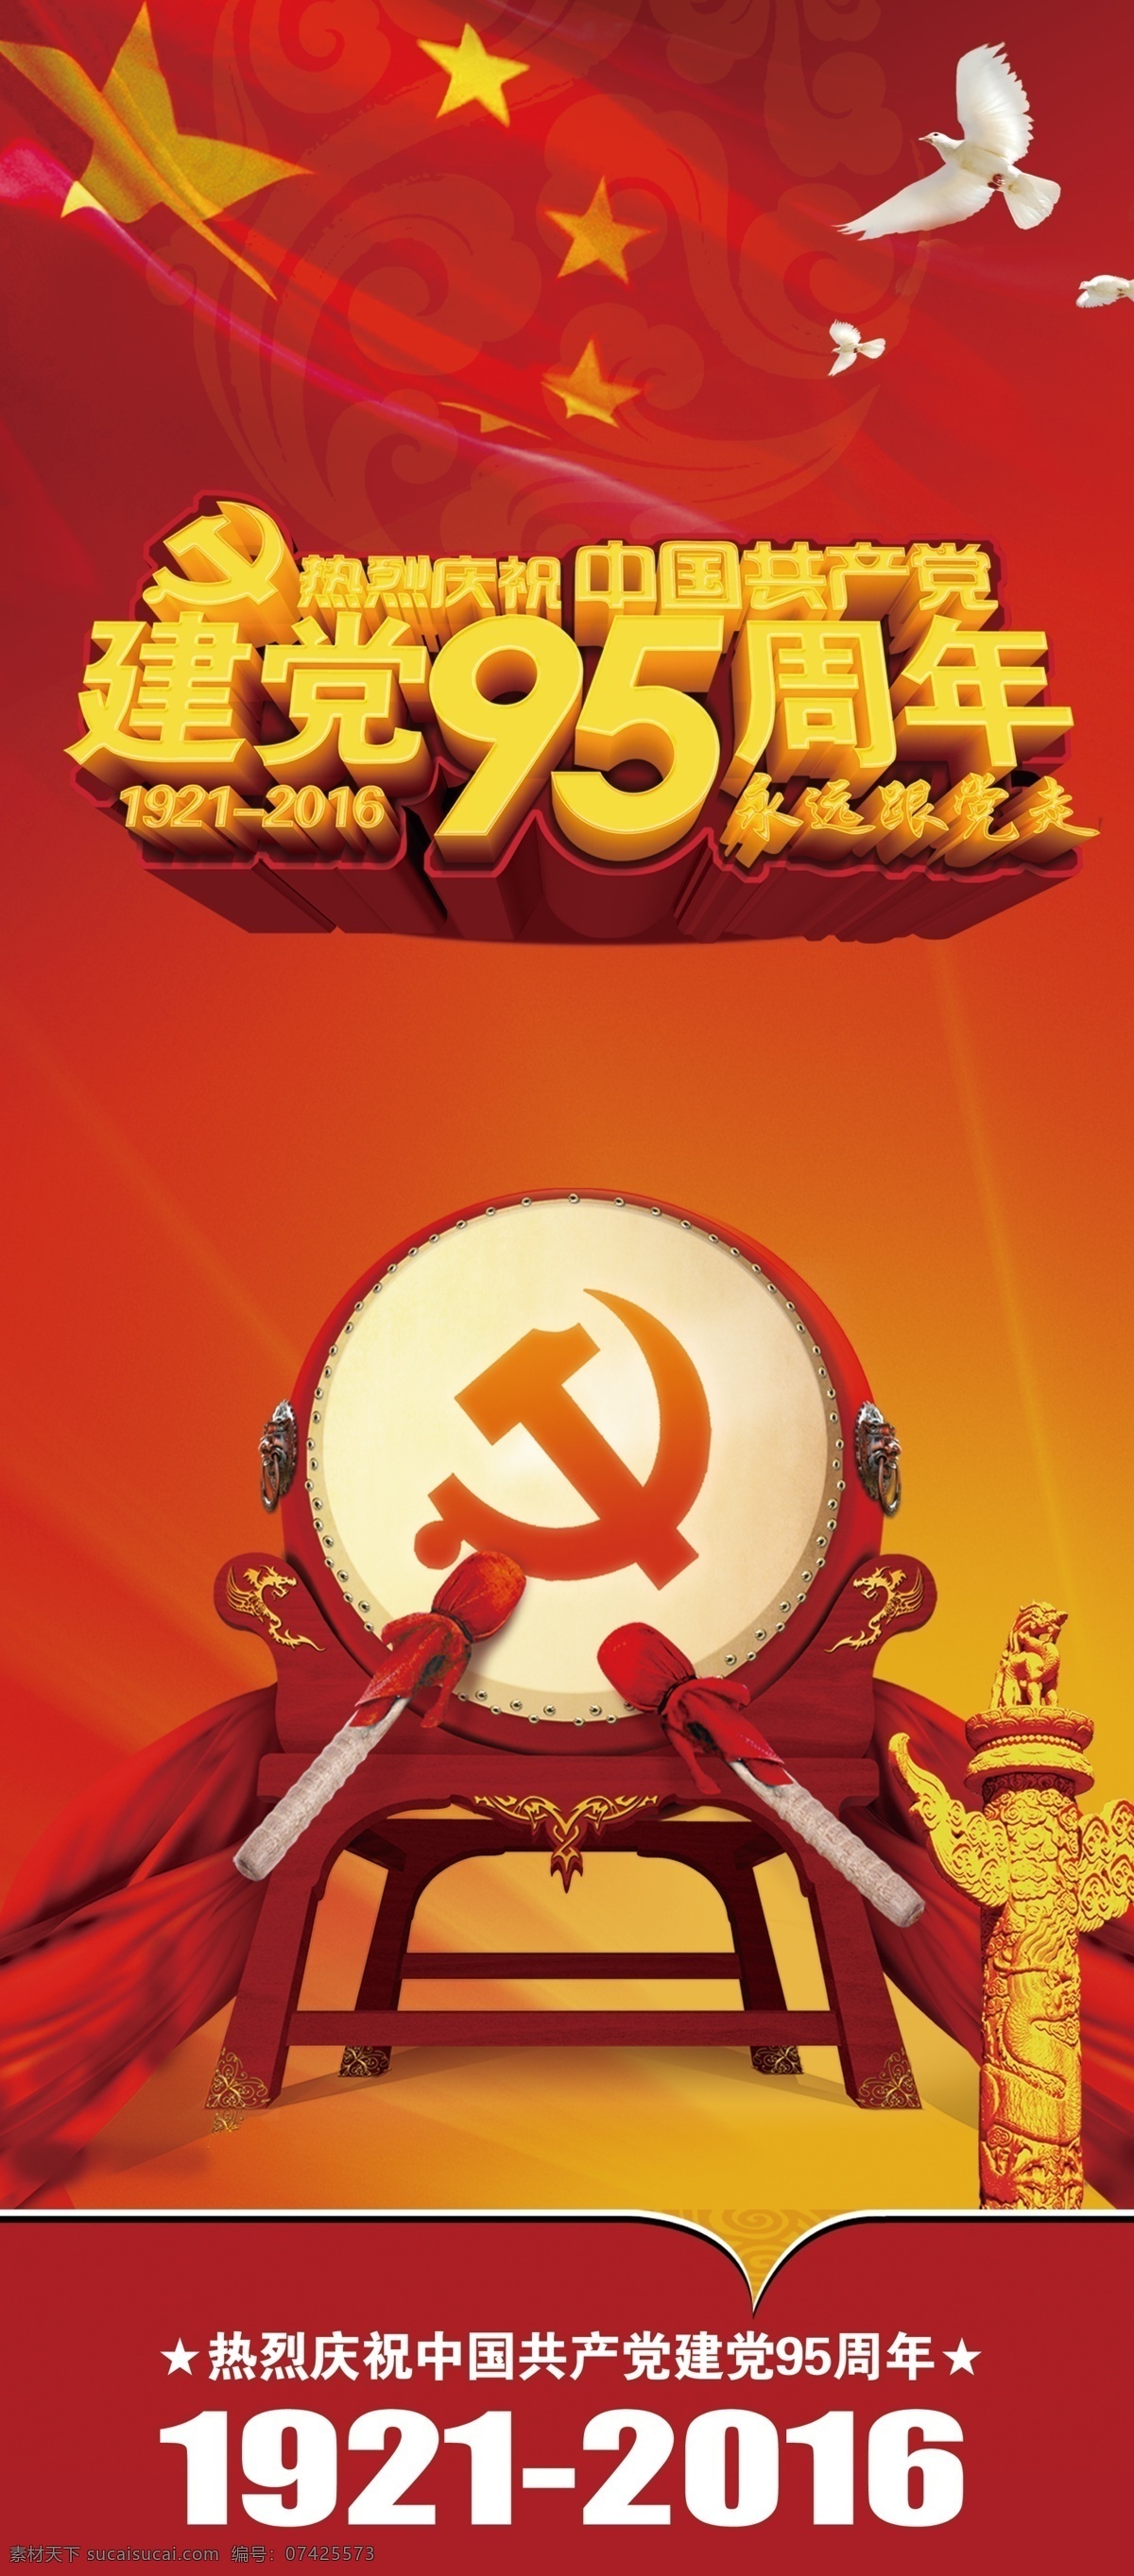 热烈 庆祝 中国共产党 建党 95 周年 展架 党 95周年 白鸽 华表 党徽 国旗 永远跟党走 立体字 红色